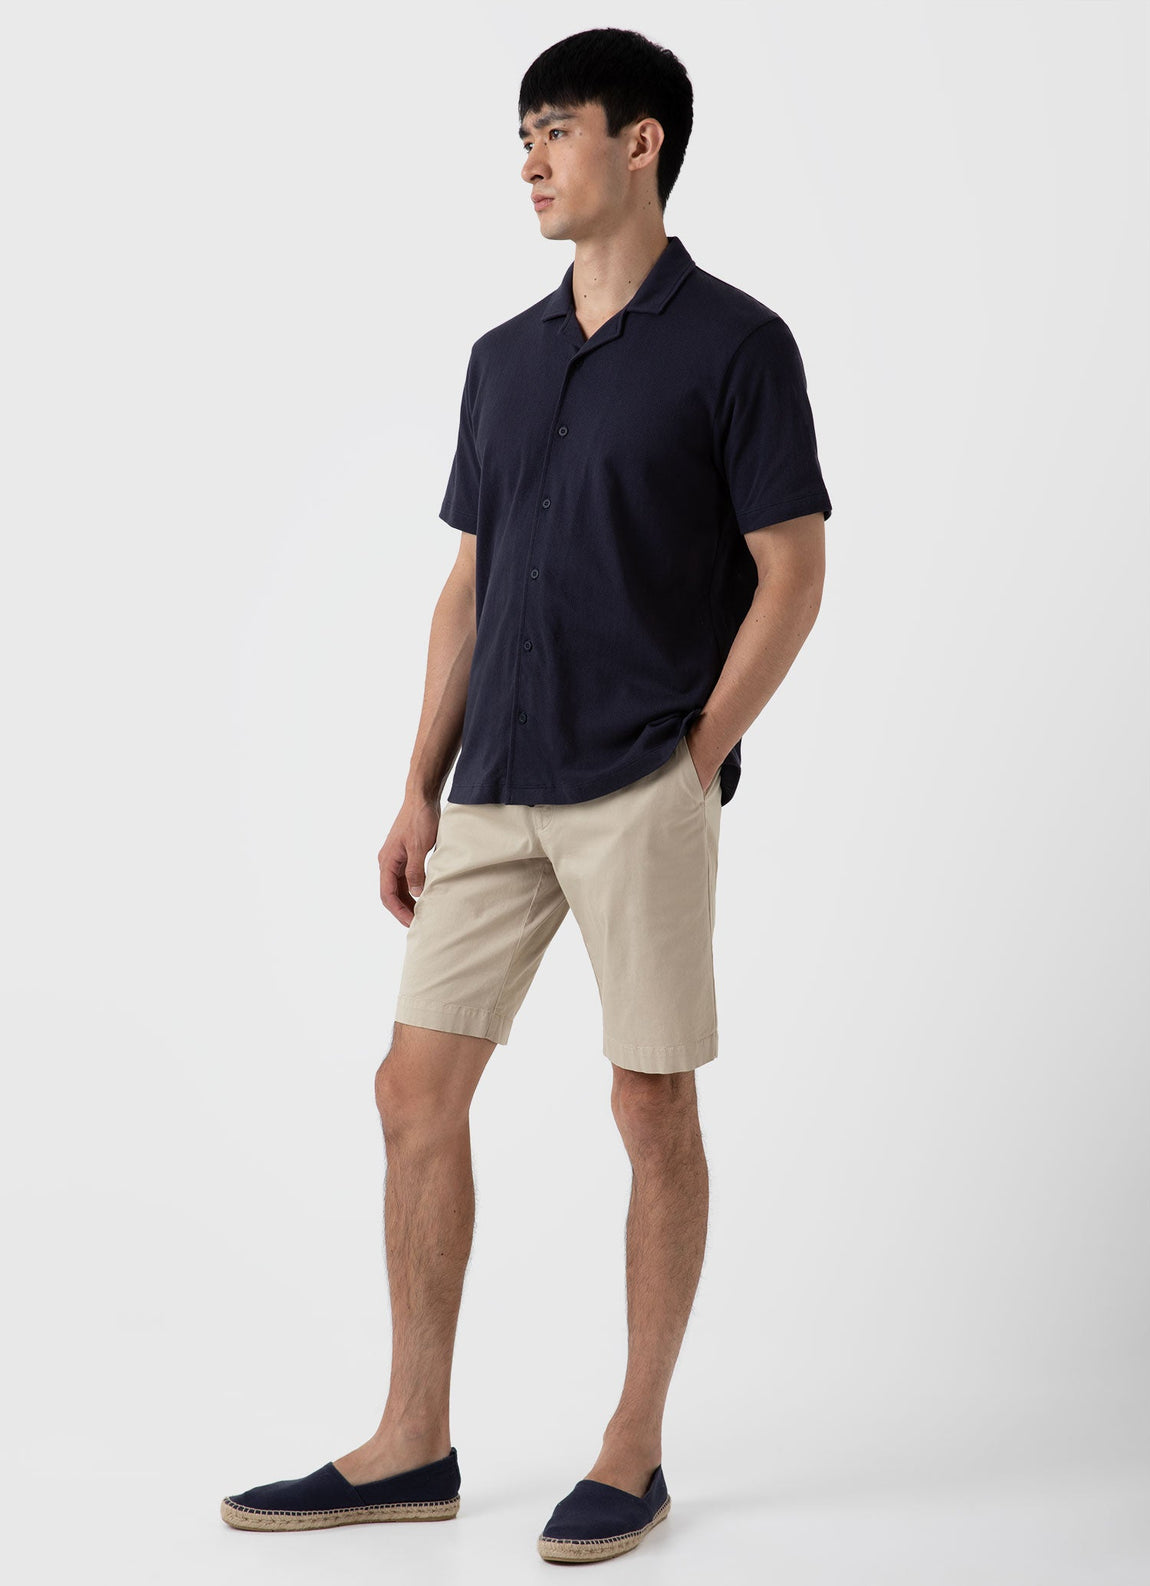 Men's Riviera Camp Collar Shirt in Navy | Sunspel